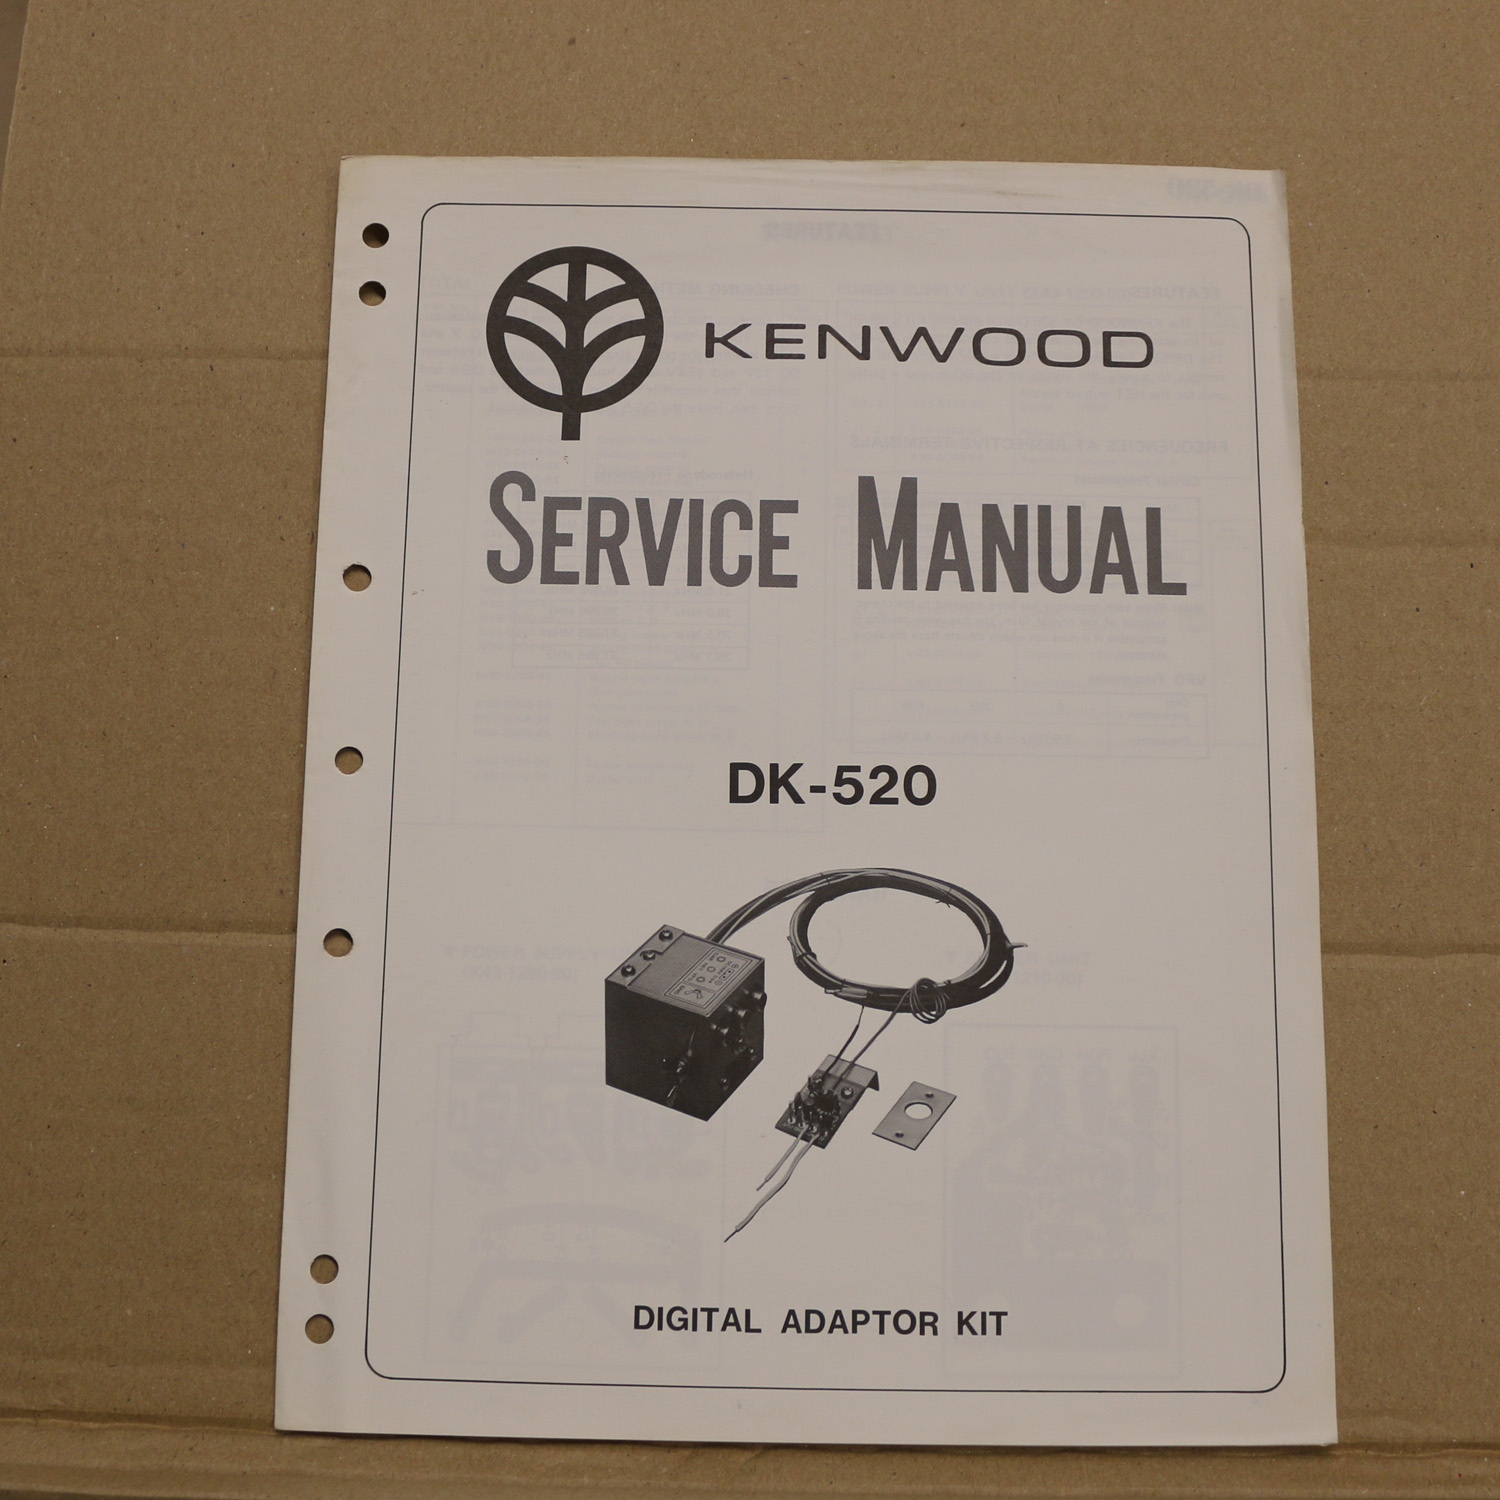 Kenwood DK-520 Service Manual